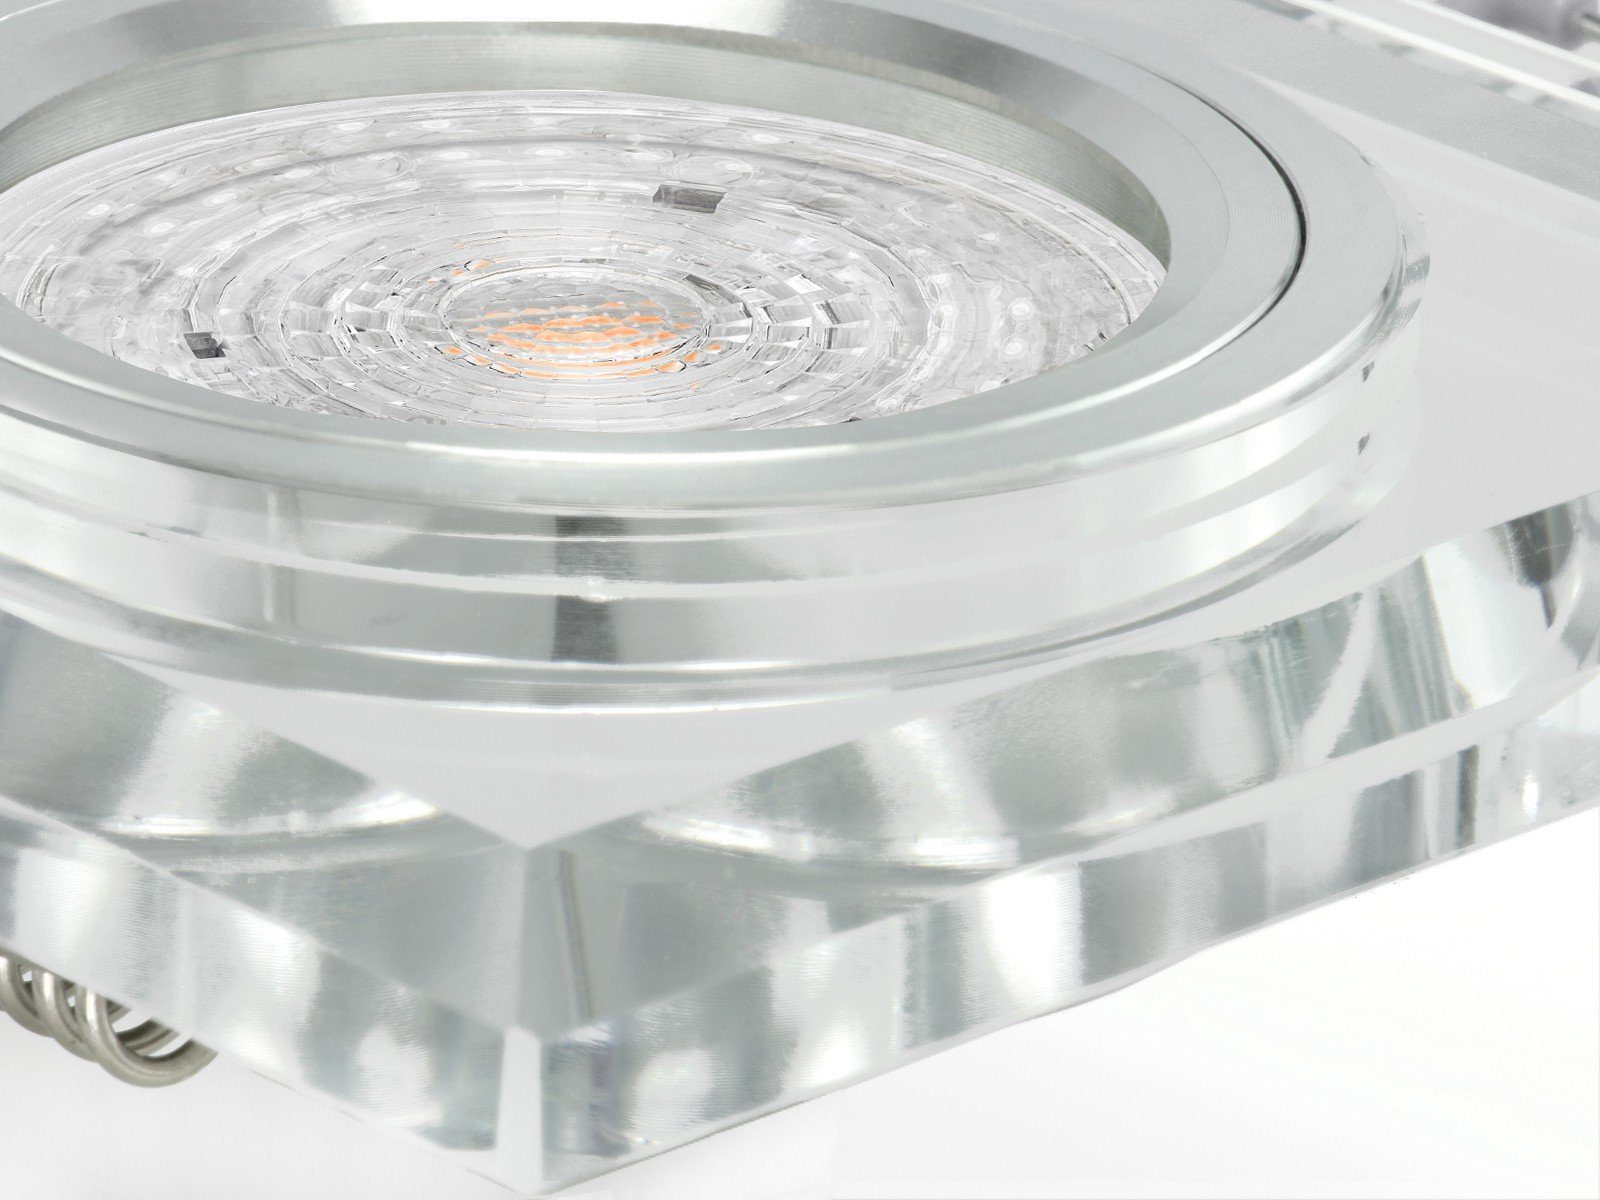 SSC-LUXon LED Einbaustrahler klar Neutralweiß Glas LED-Einbauspot Design aus 4,9W, quadratisch spiegelnd